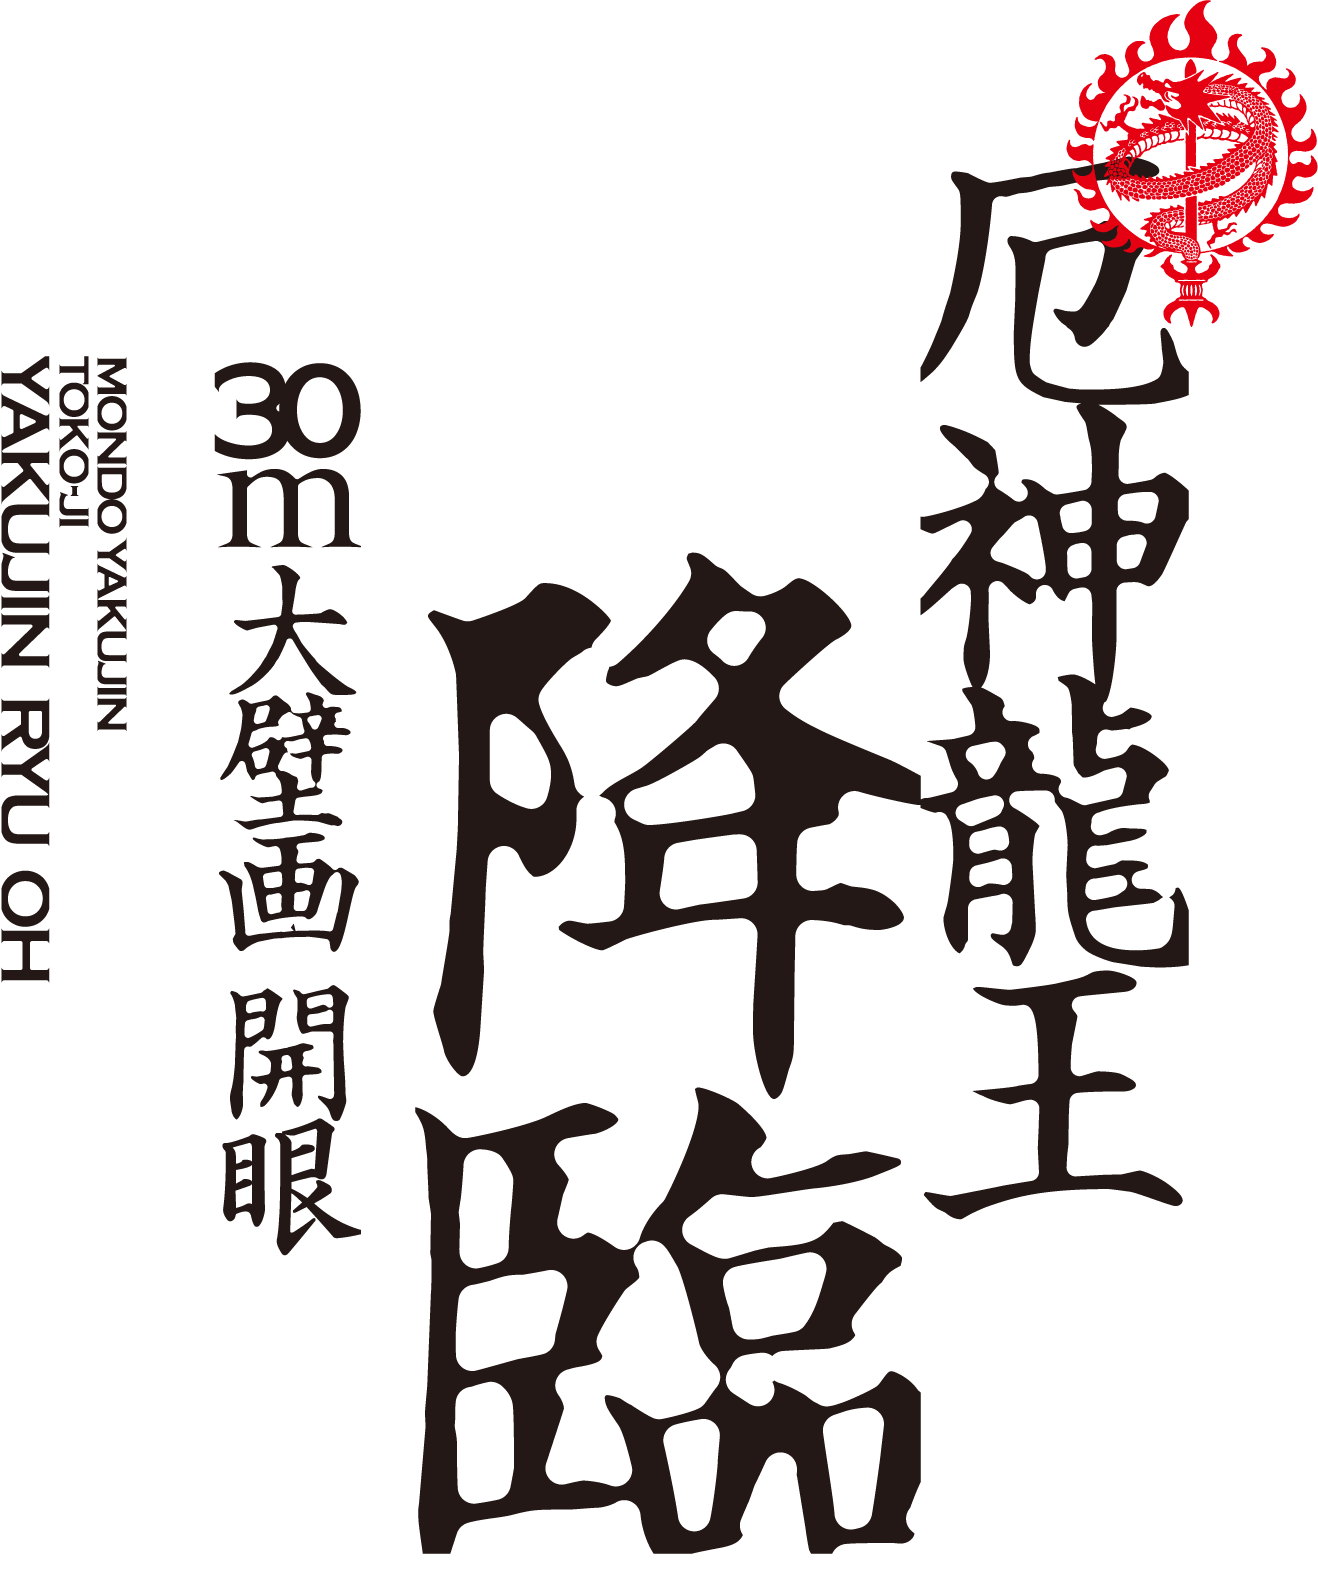 厄神龍王降臨 30mの大壁画公開中 MONDO YAKUJIN TOKO-JI YAKUJIN RYU OH